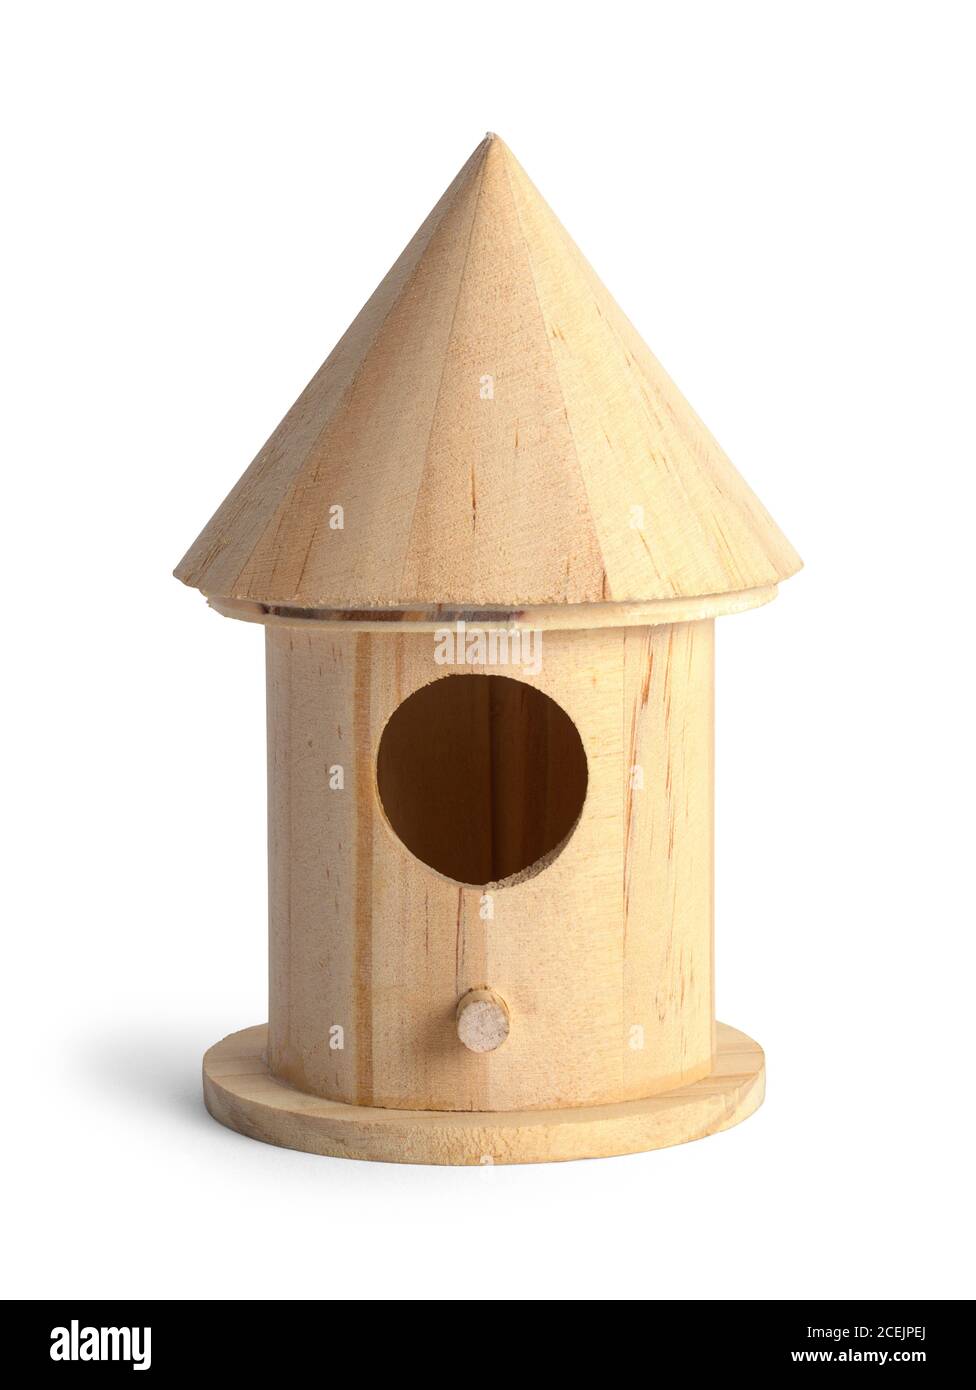 Wood Bird House Isolated on White Background. Stock Photo